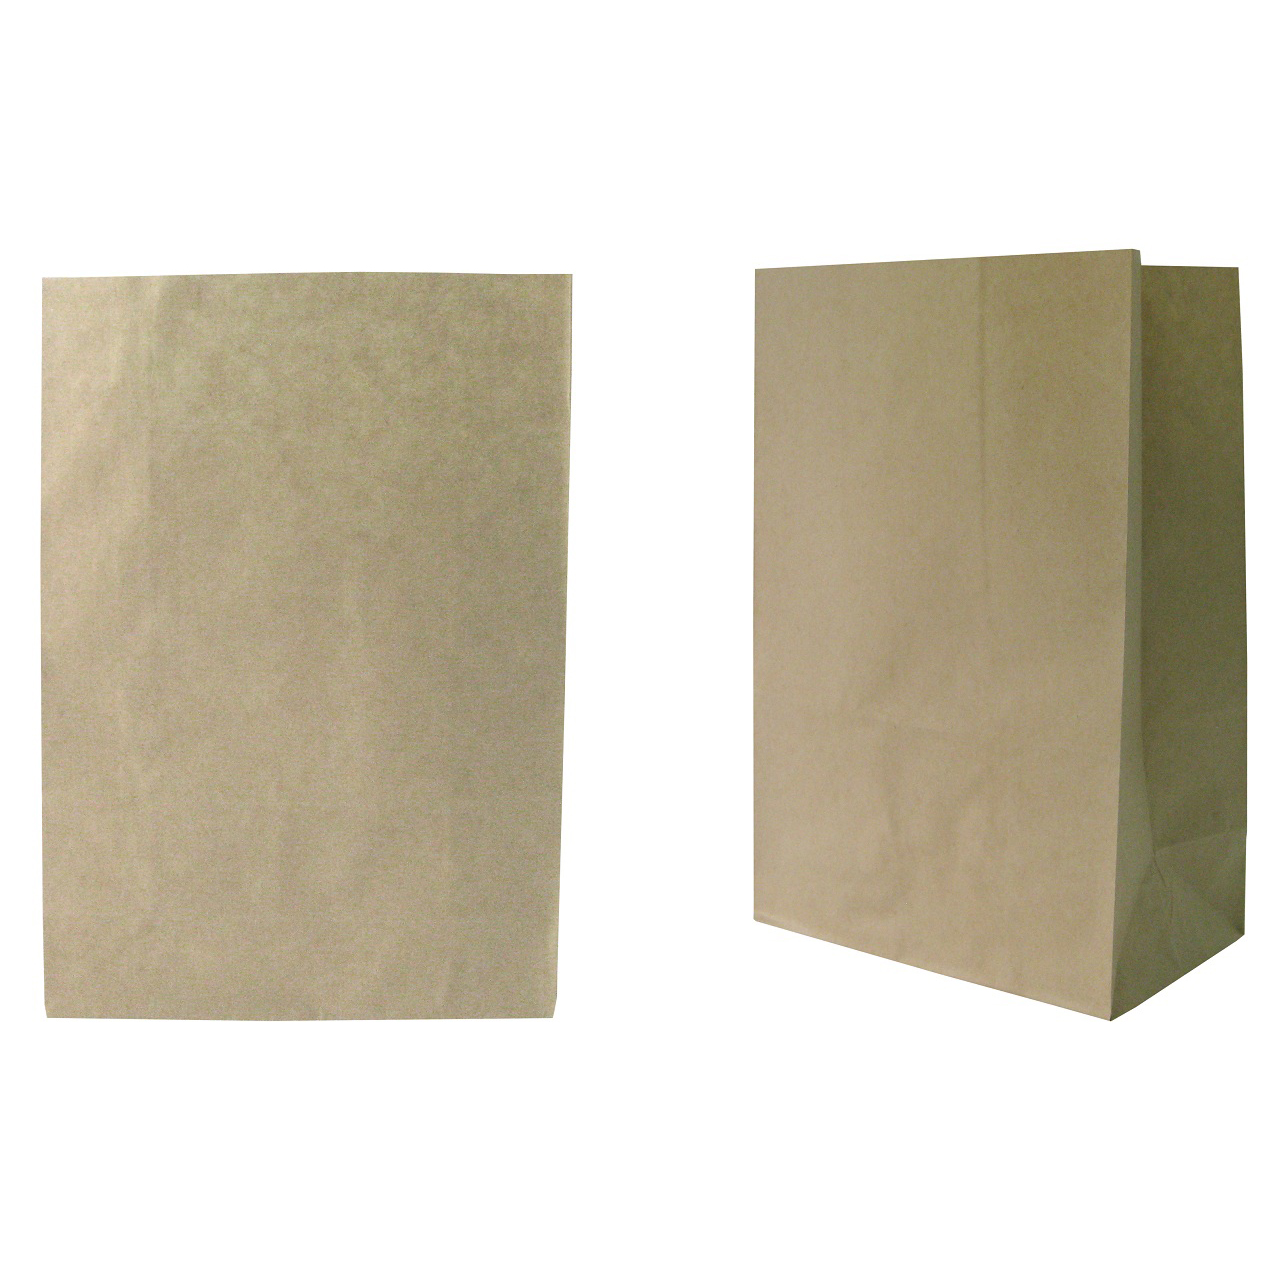 ถุงกระดาษมีก้น 50 แกรม สีน้ำตาล ขนาด 12x5x17 cm. (20 ใบ/แพ็ค)